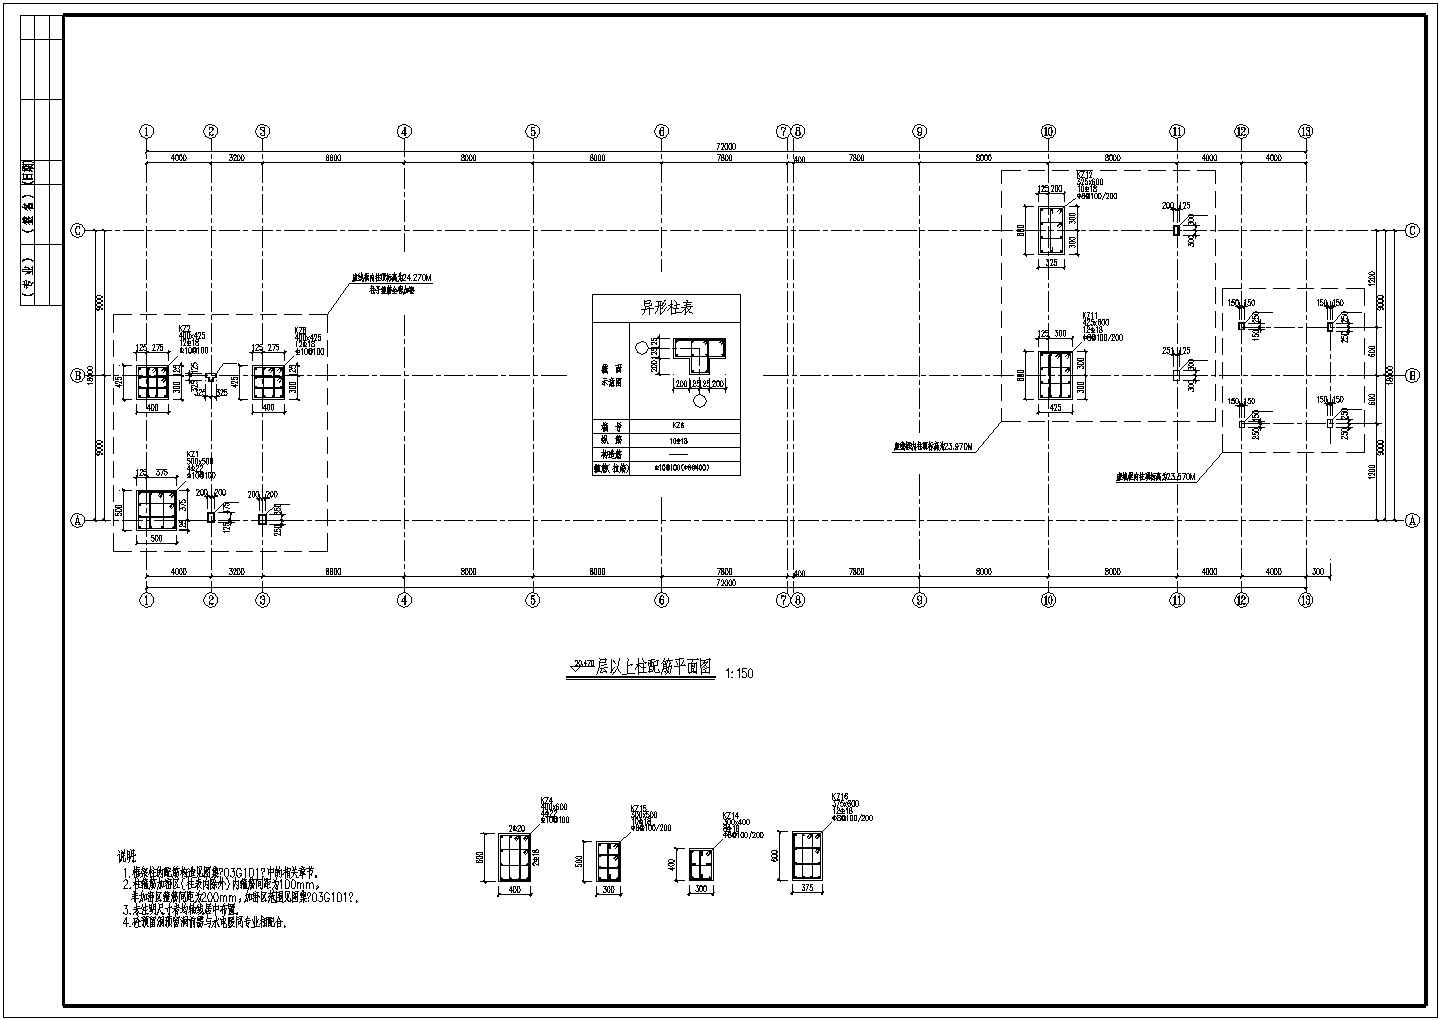 宁波某光学公司厂房建筑结构图